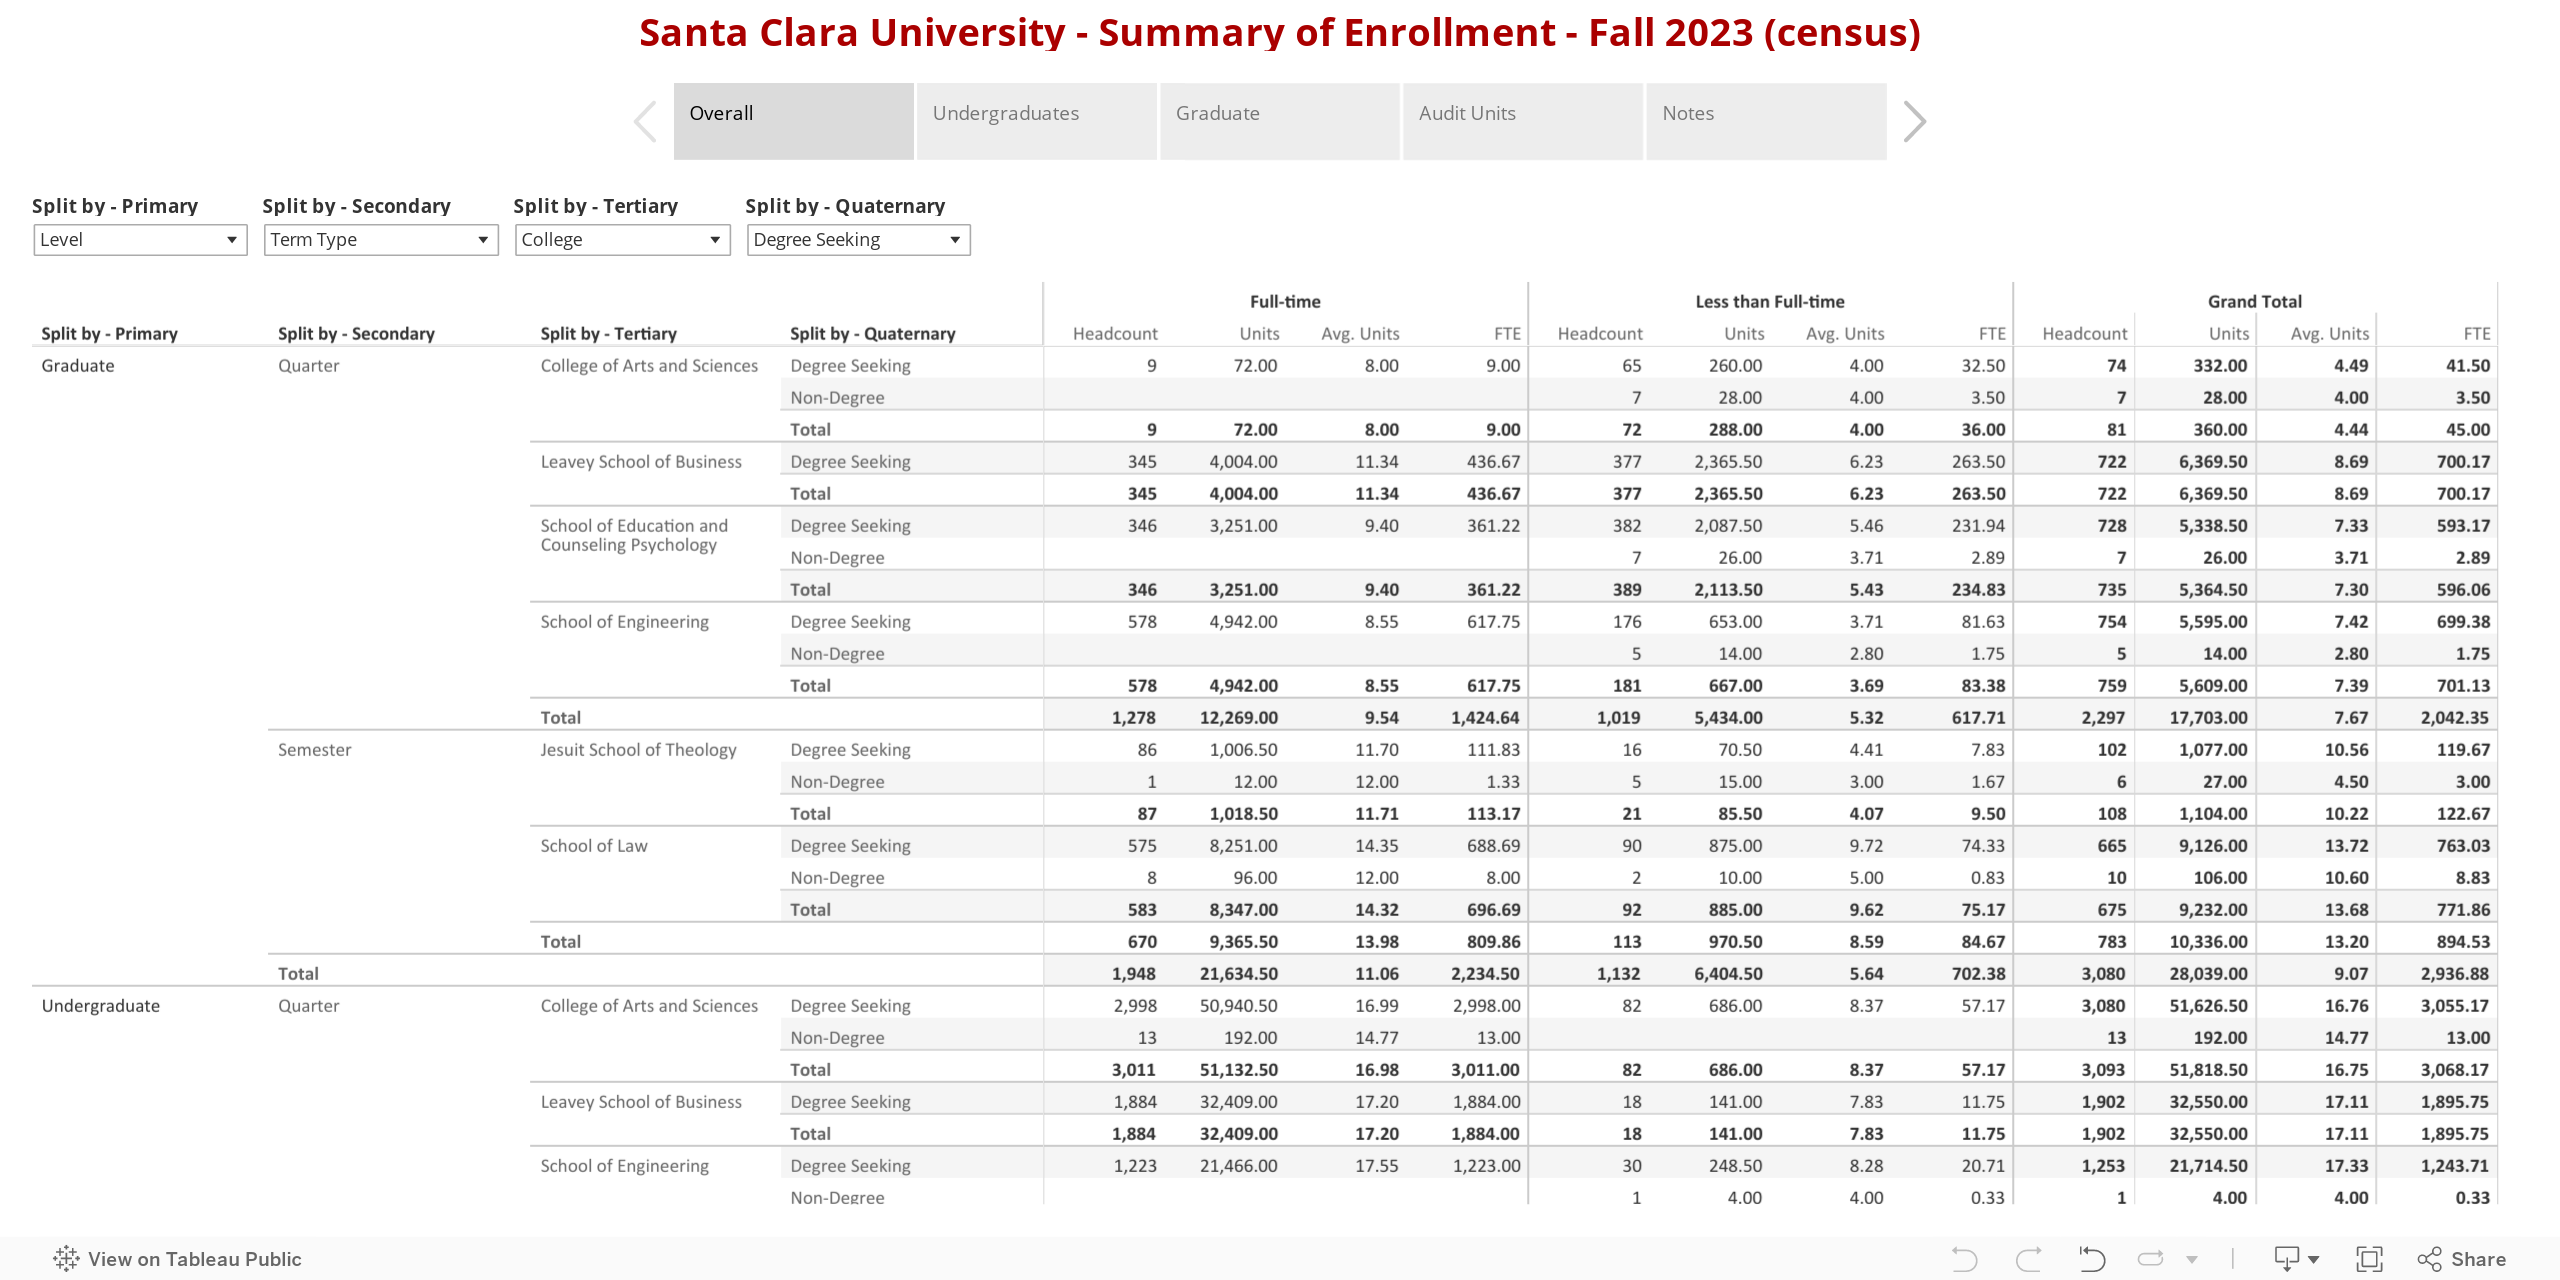 Santa Clara University - Summary of Enrollment - Fall 2023 (census) 